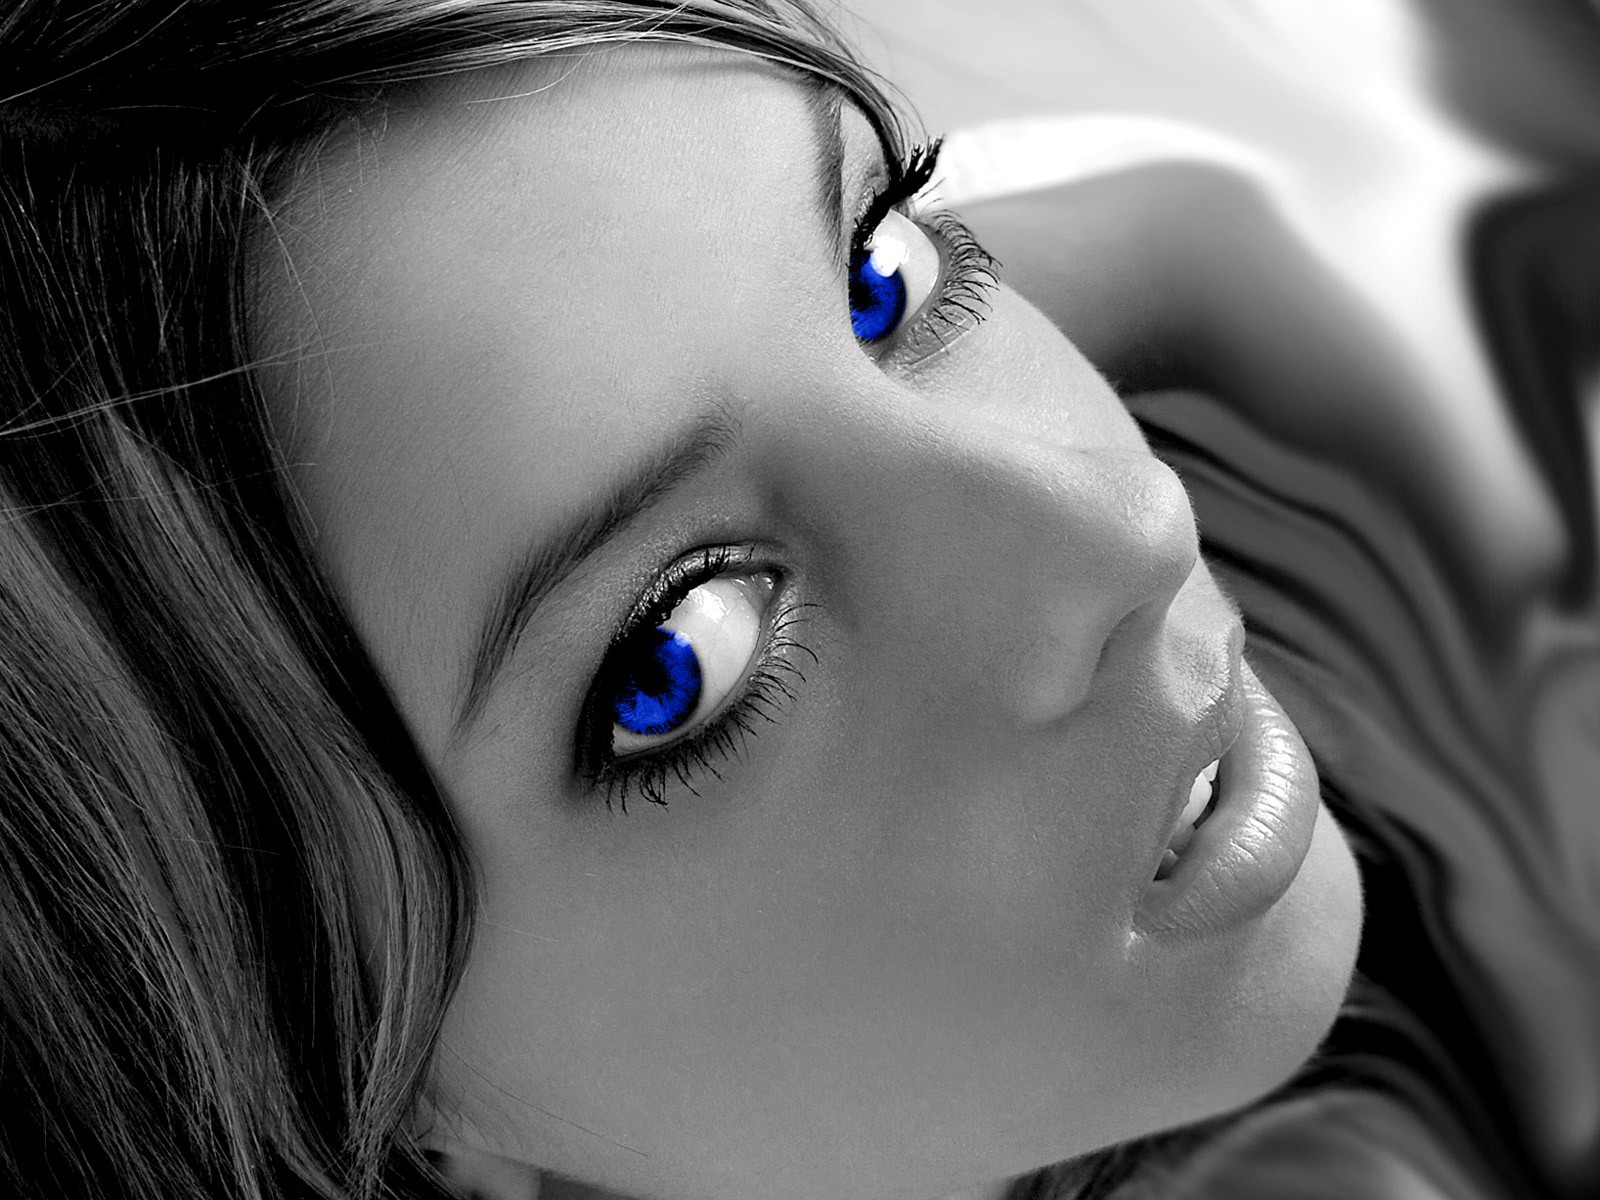 white girl wallpaper,face,blue,hair,eyebrow,nose